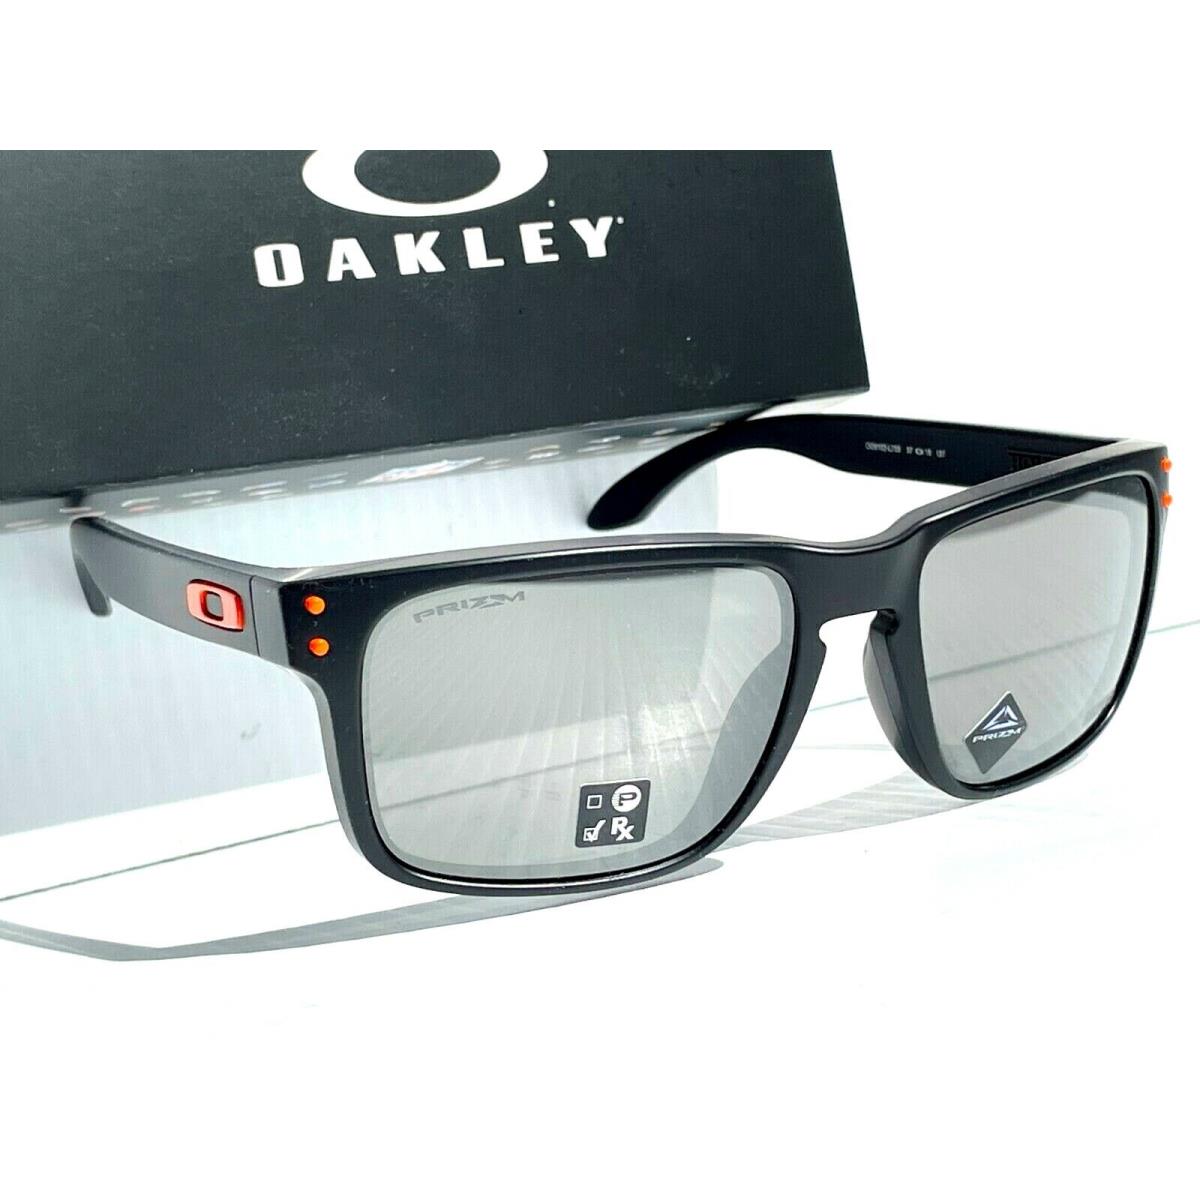 Oakley sunglasses Holbrook - Black Frame, Silver Lens 2